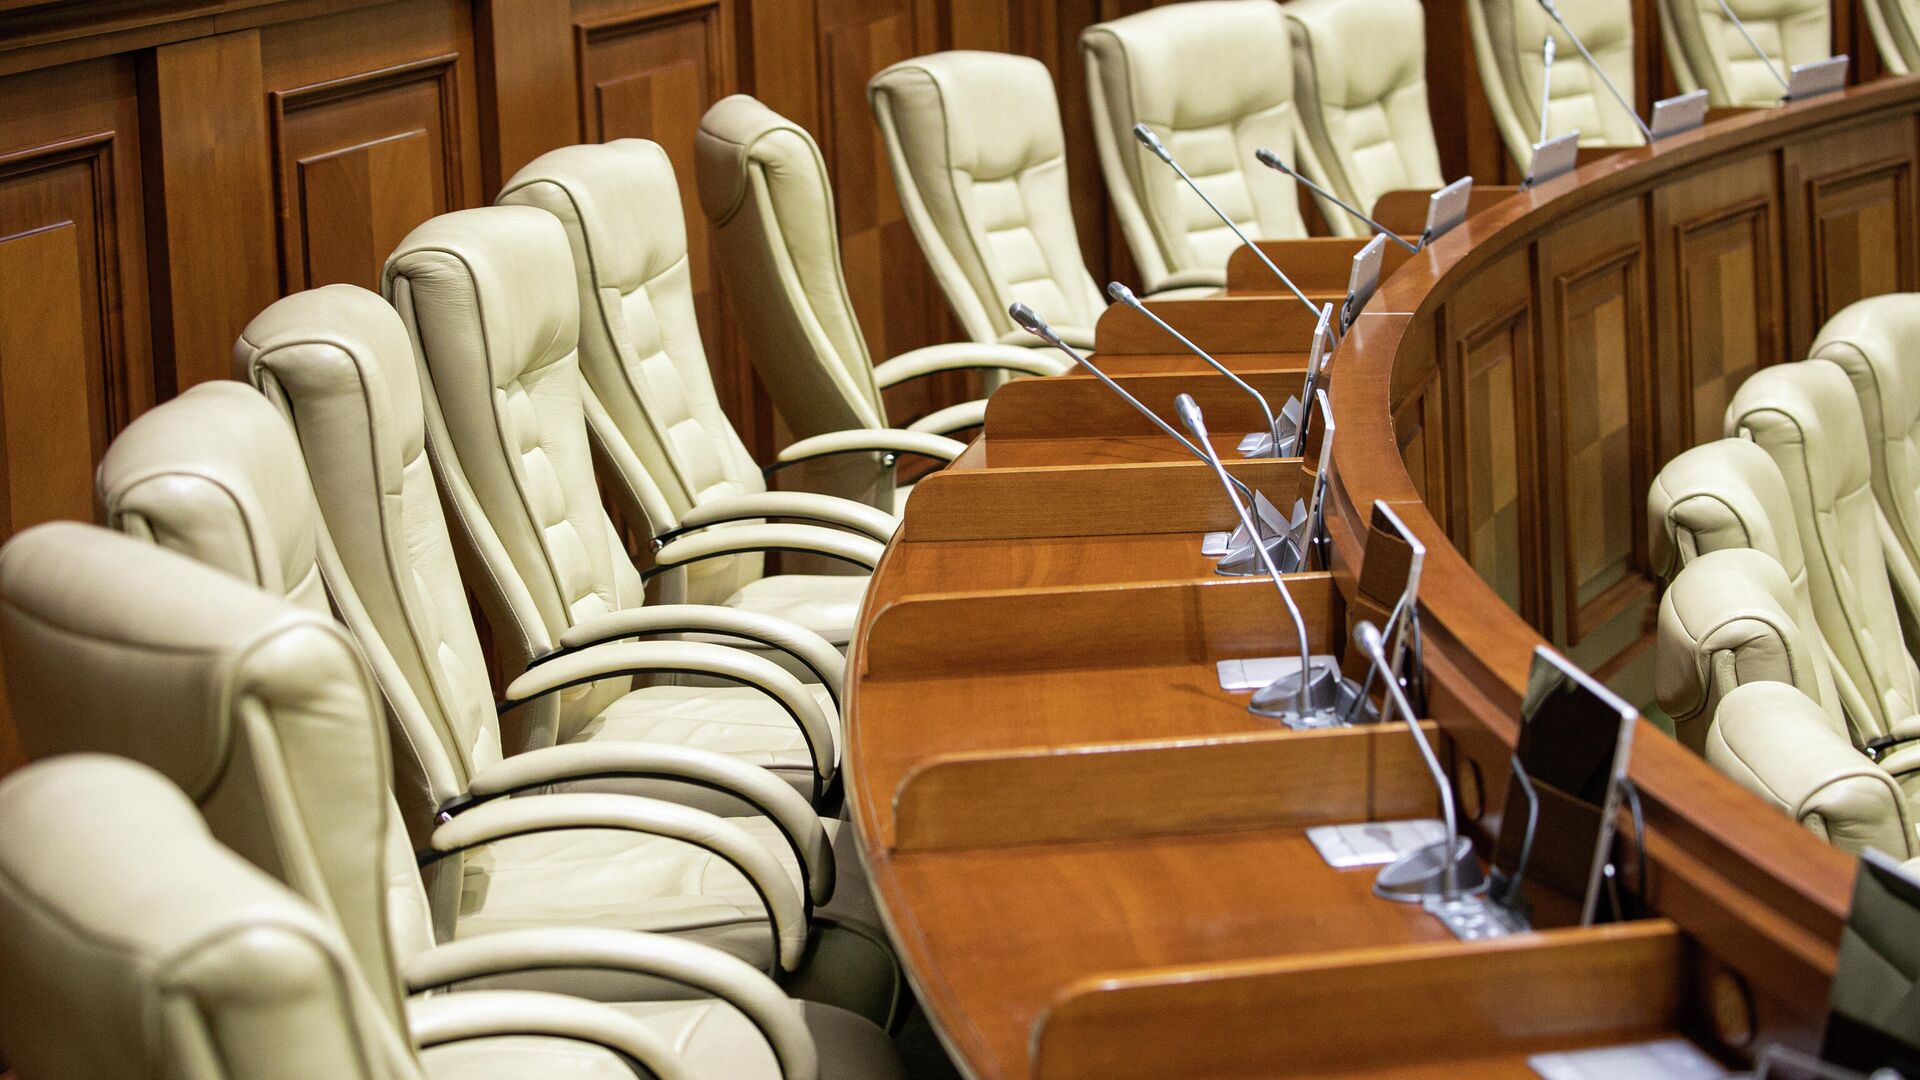 Ședința de constituire a Parlamentului de Legislatura a XI-a - 26 iulie 2021 - Sputnik Moldova, 1920, 26.07.2021